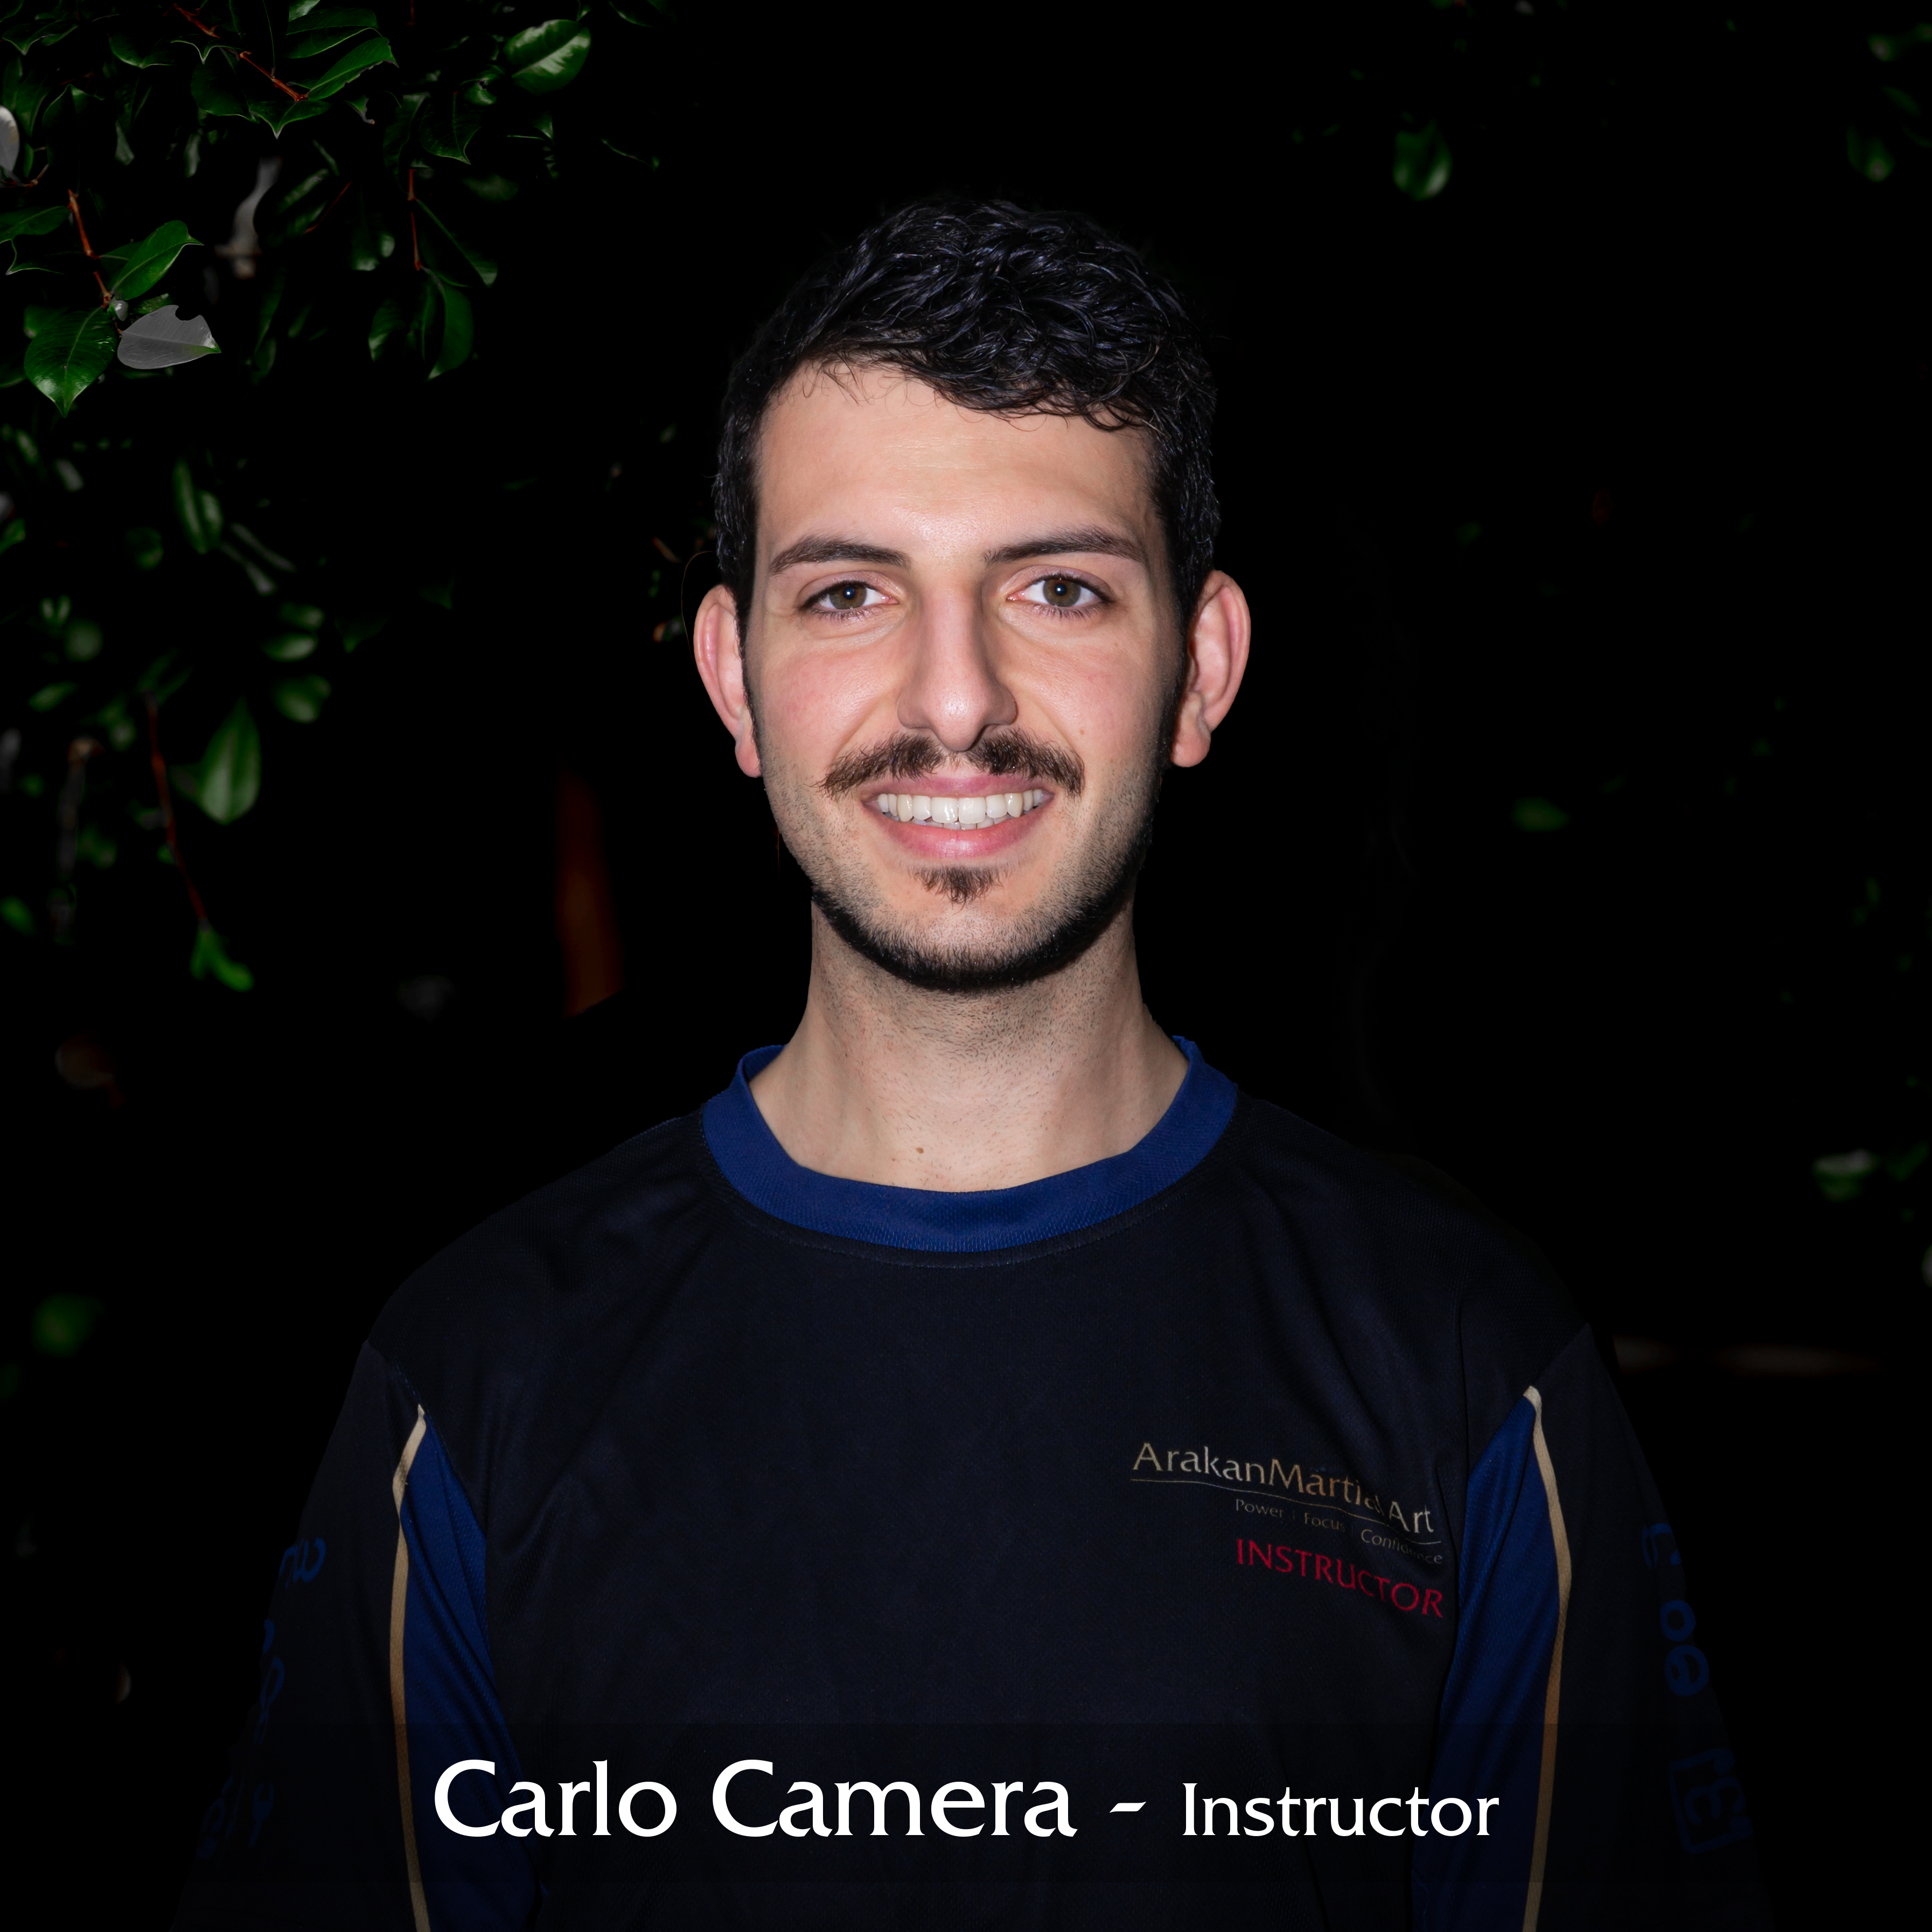 Carlo Camera